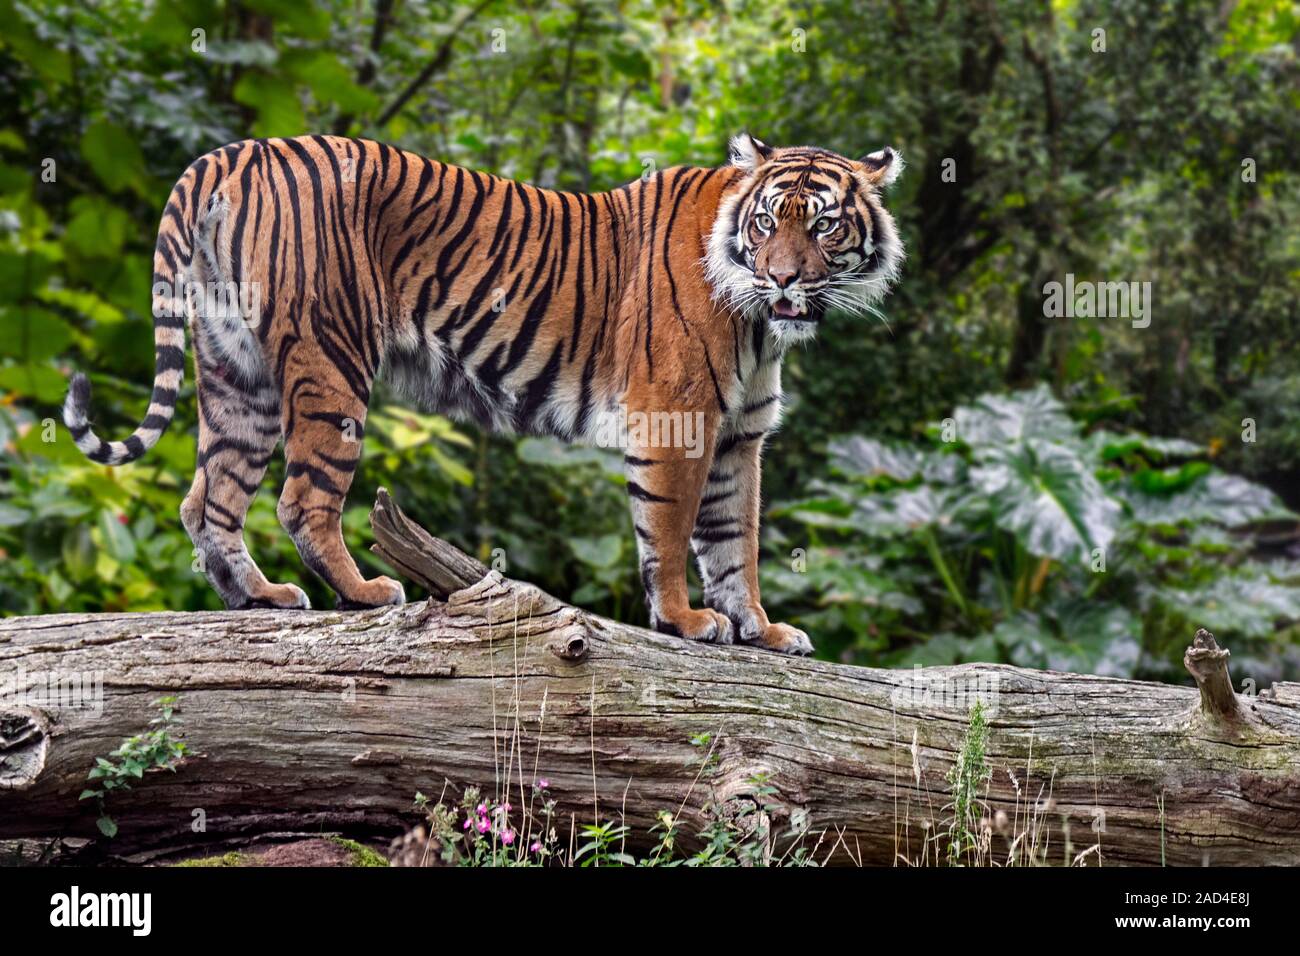 Tigre de Sumatra (Panthera tigris sondaica) en troncos de árboles caídos en el bosque tropical, nativo de la isla indonesia de Sumatra, Indonesia Foto de stock